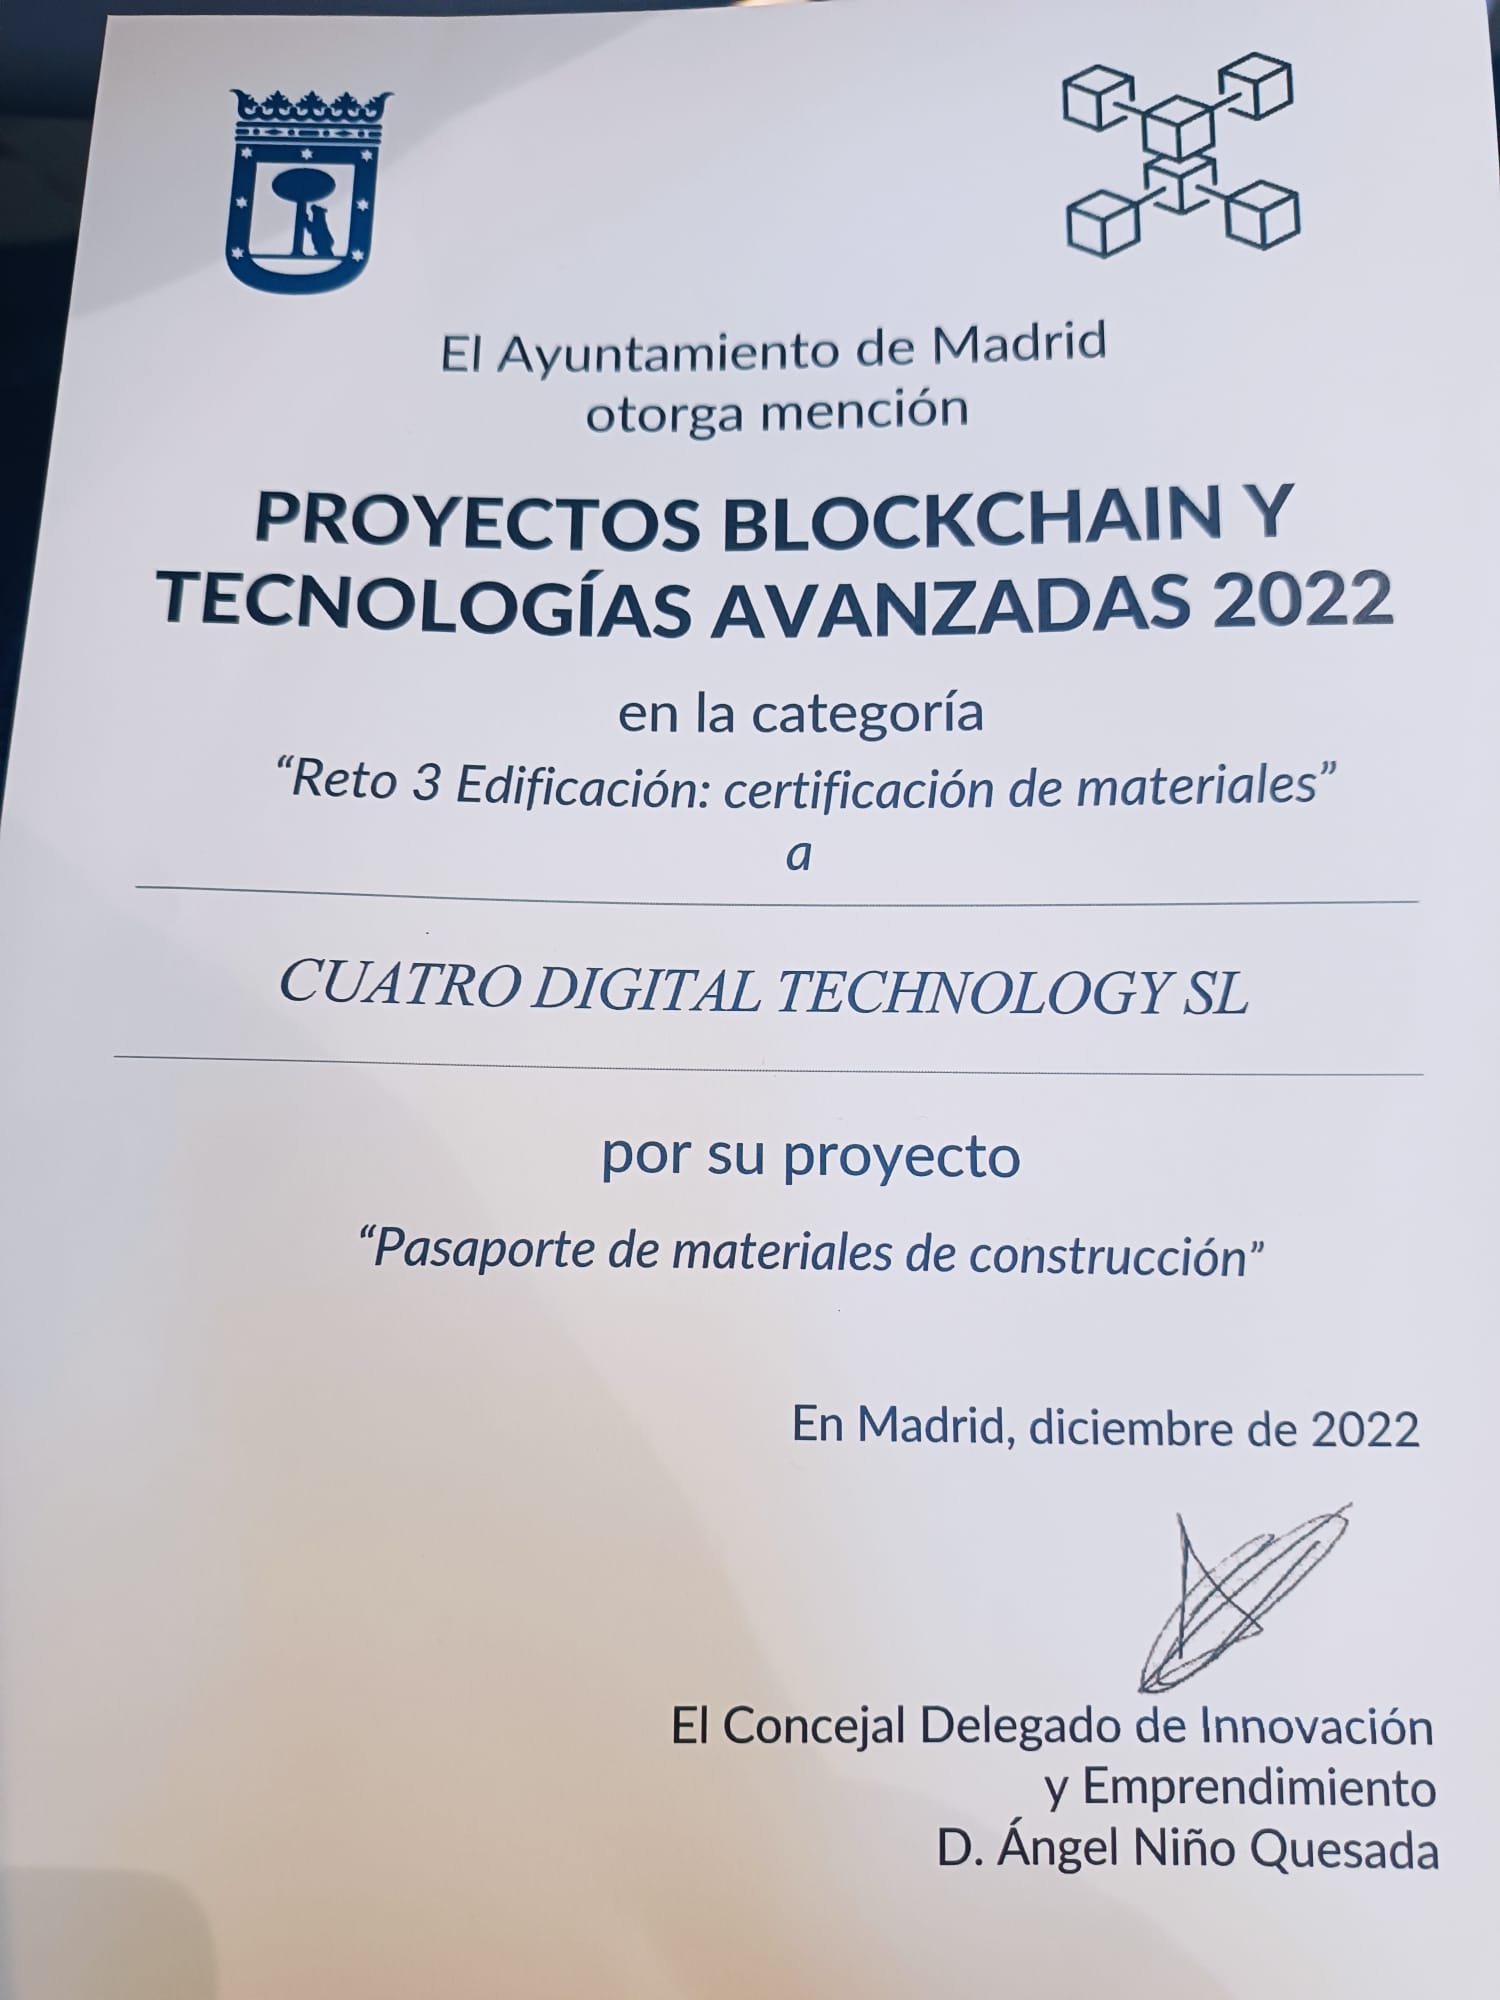 Hemos sido galardonados con un Premio Blockchain y Tecnologías Avanzadas 2022